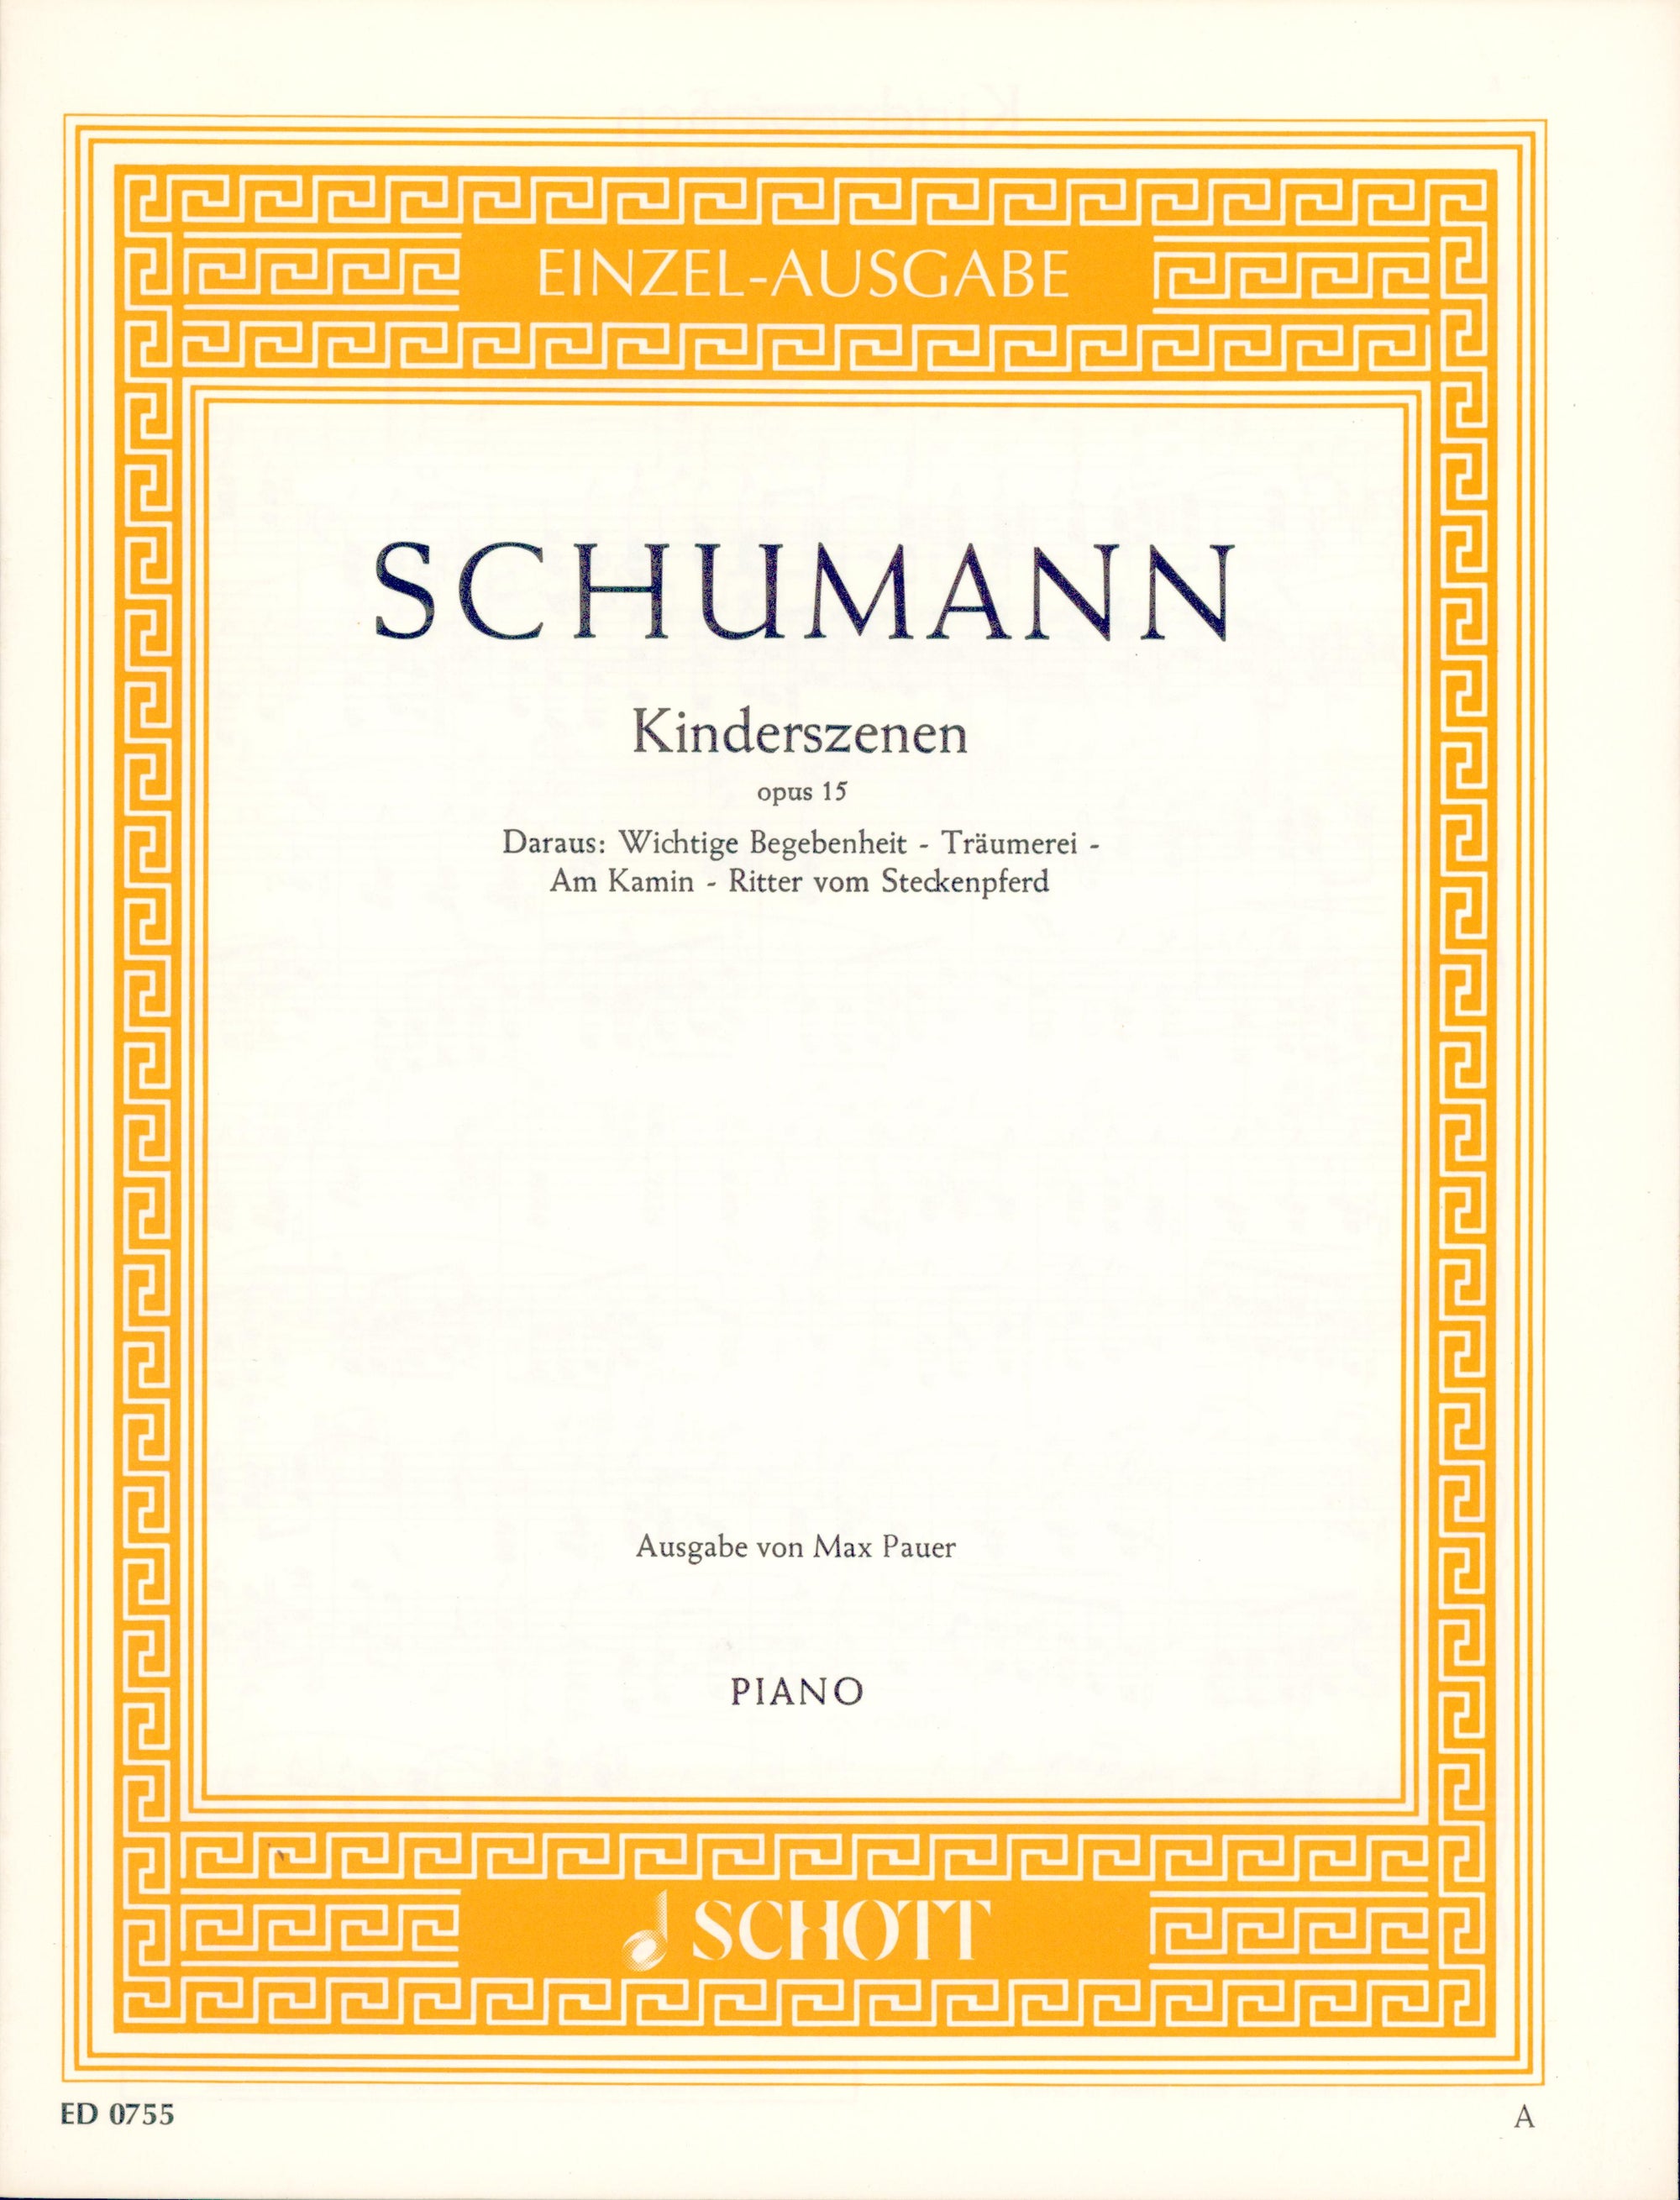 Schumann: Kinderszenen, Op. 15, Nos. 6-9